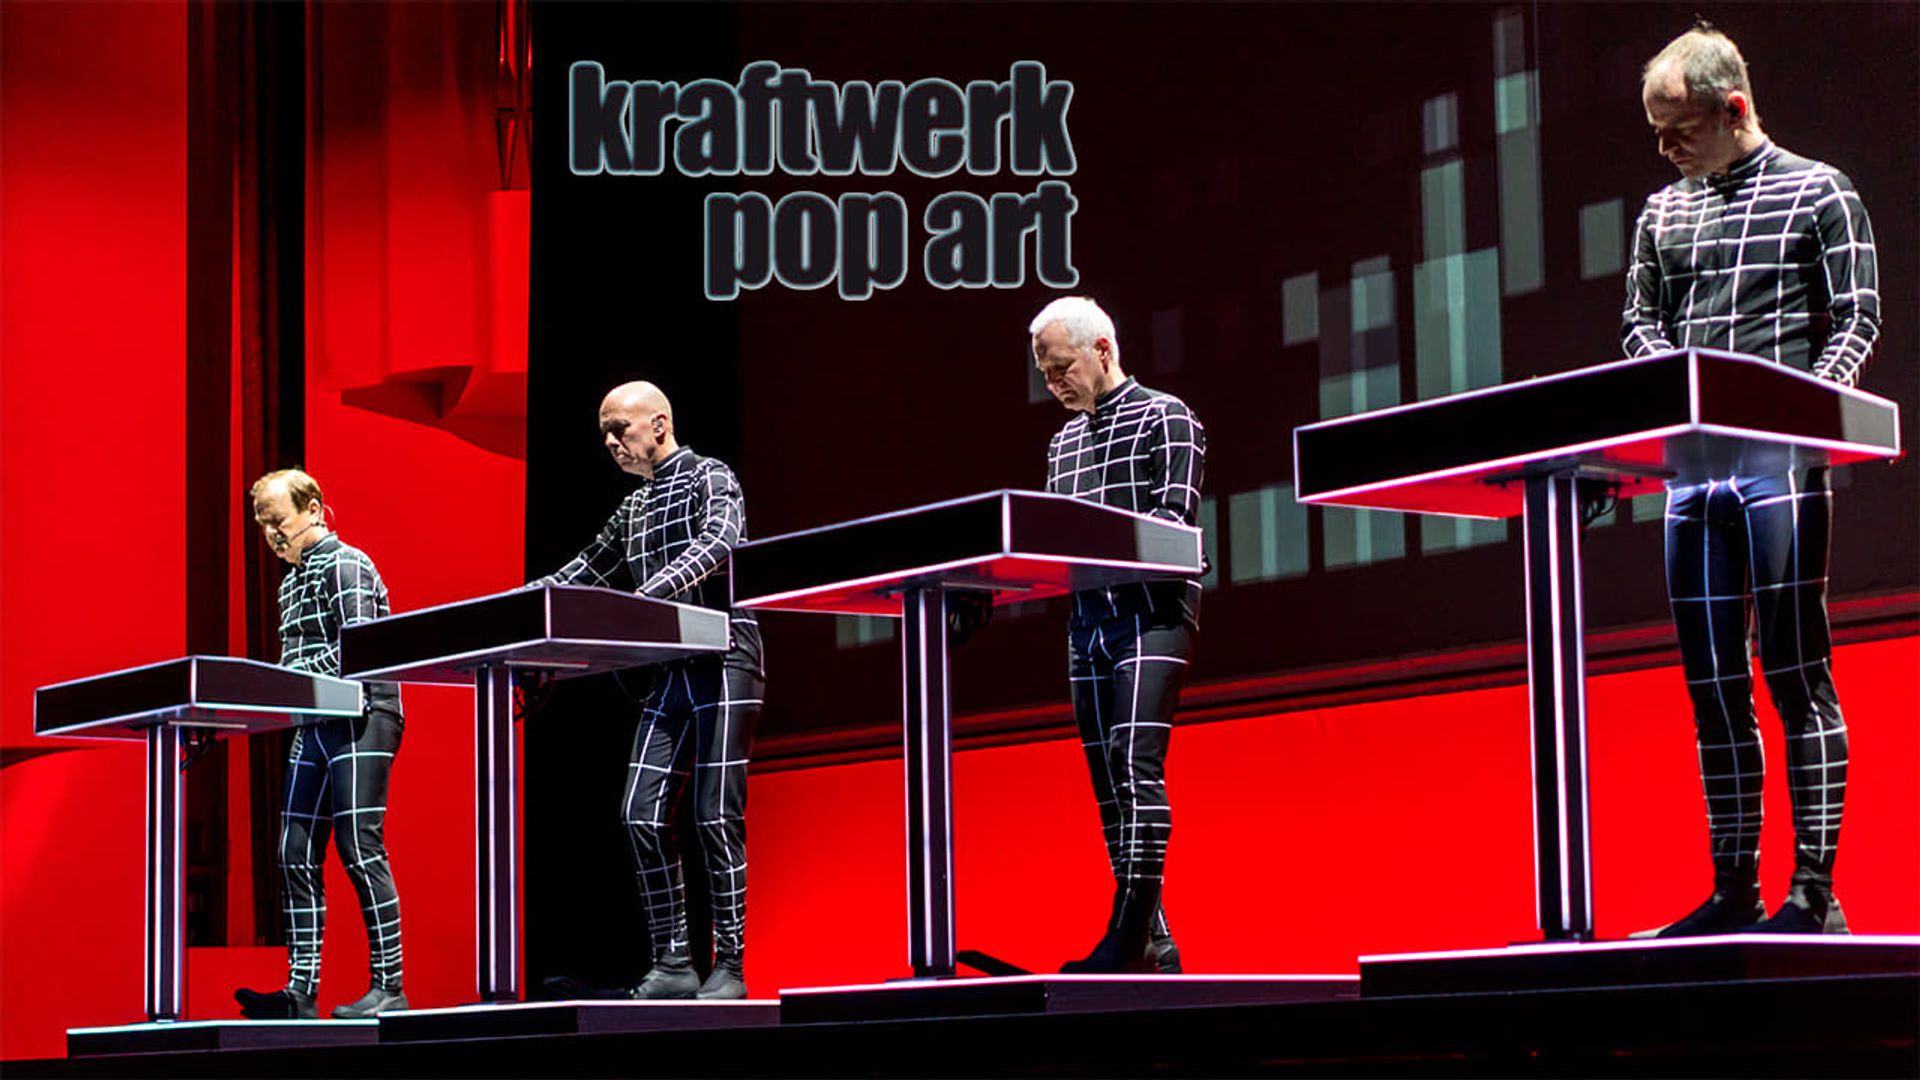 Kraftwerk - Pop Art background